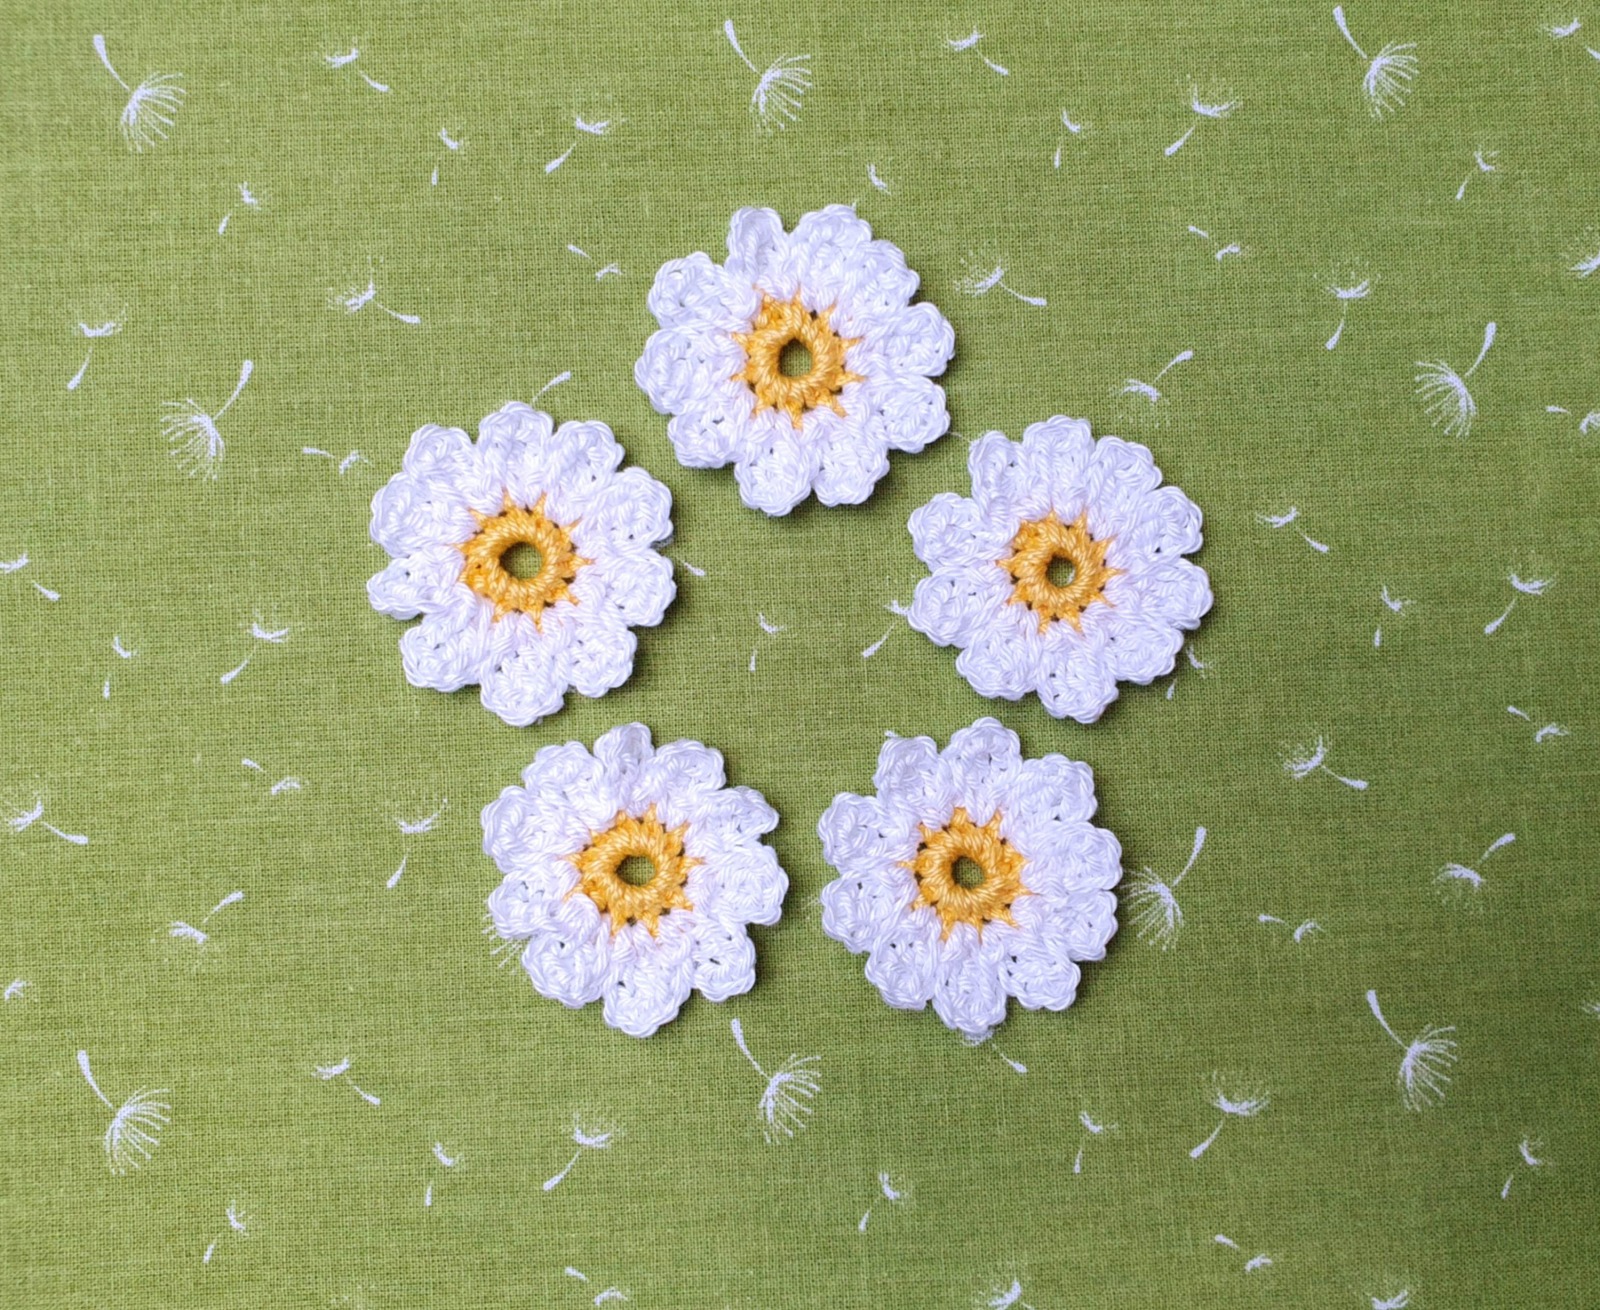 2-er Set Häkelblumen Gänseblümchen Margeriten in Weiß-Gelb 6